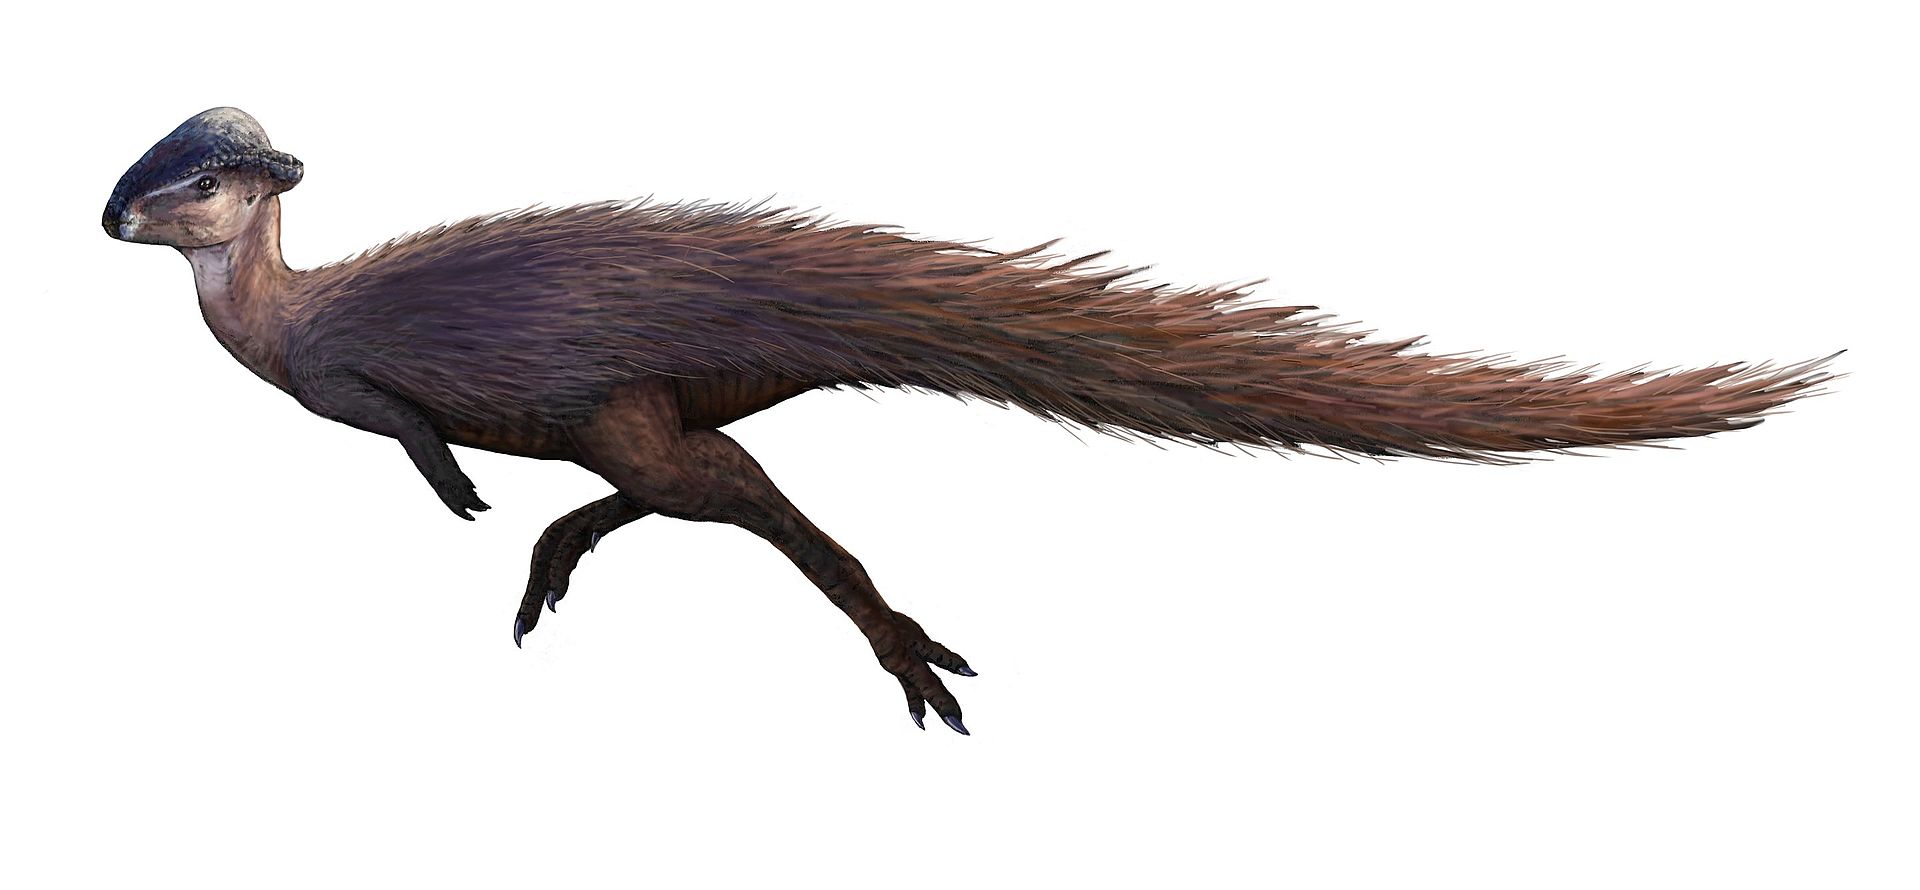 Pachycefalosauridní marginocefal (zástupce vývojově pokročilých ptakopánvých dinosaurů) druhu Stegoceras validum obýval území současné kanadské provincie Alberta v době před 77 až 74 miliony let. Patřil tedy k dinosaurům, jejichž den byl zhruba o půl